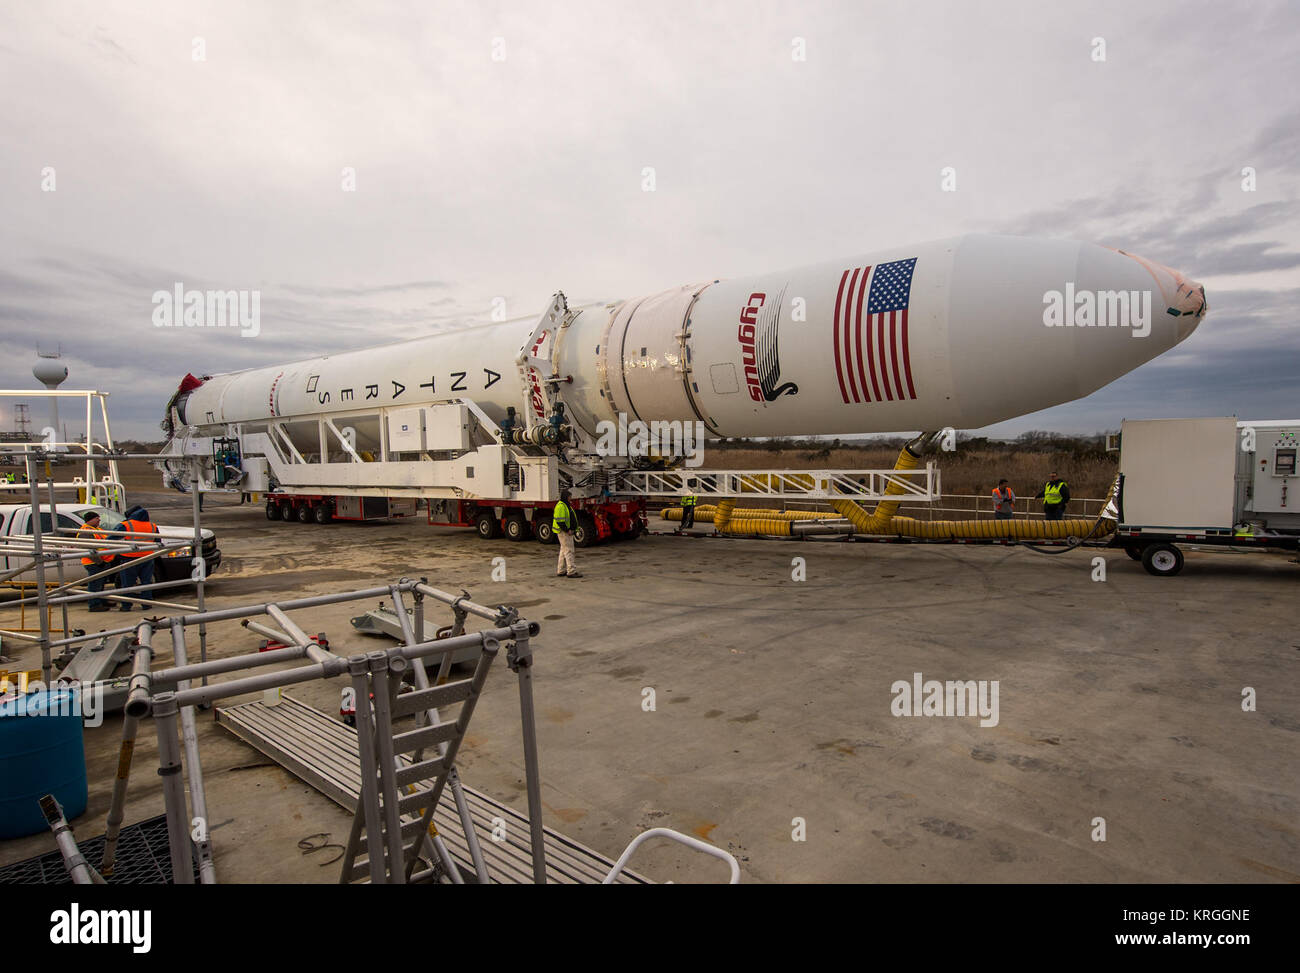 Un Orbital Sciences Corporation Antares rocket è visto come si è esteso a Launch Pad-0A in corrispondenza di NASA Wallops Flight Facility, Domenica, 5 gennaio 2014 in anticipo di una prevista Mercoledì, Gennaio 8th, 1:32 p.m. Lancio di EST, Wallops Island, VA. L'Antares lancerà un Cygnus navicella spaziale su una nave da trasporto di rialimentazione missione alla stazione spaziale internazionale. L'orbitale-1 missione è Orbital Sciences" primo contratto consegna merci volo verso la stazione spaziale della NASA. Tra il carico a bordo di Cygnus impostato per avviare per la stazione spaziale sono esperimenti scientifici, equipaggio disposizioni, parti di ricambio e altro hardware. Ph Foto Stock